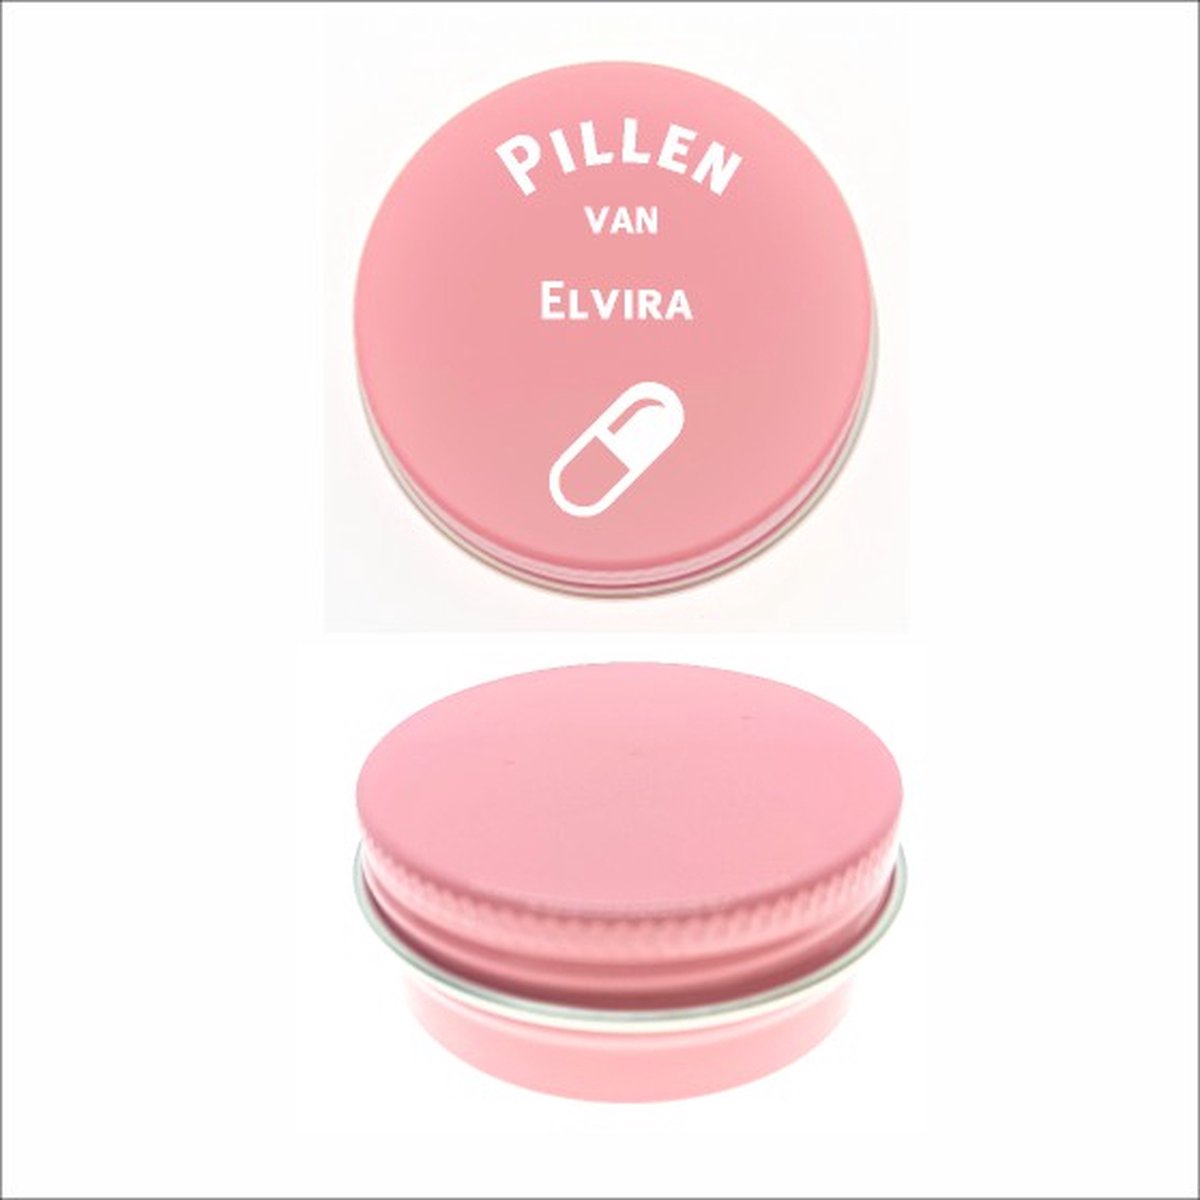 Pillen Blikje Met Naam Gravering - Elvira